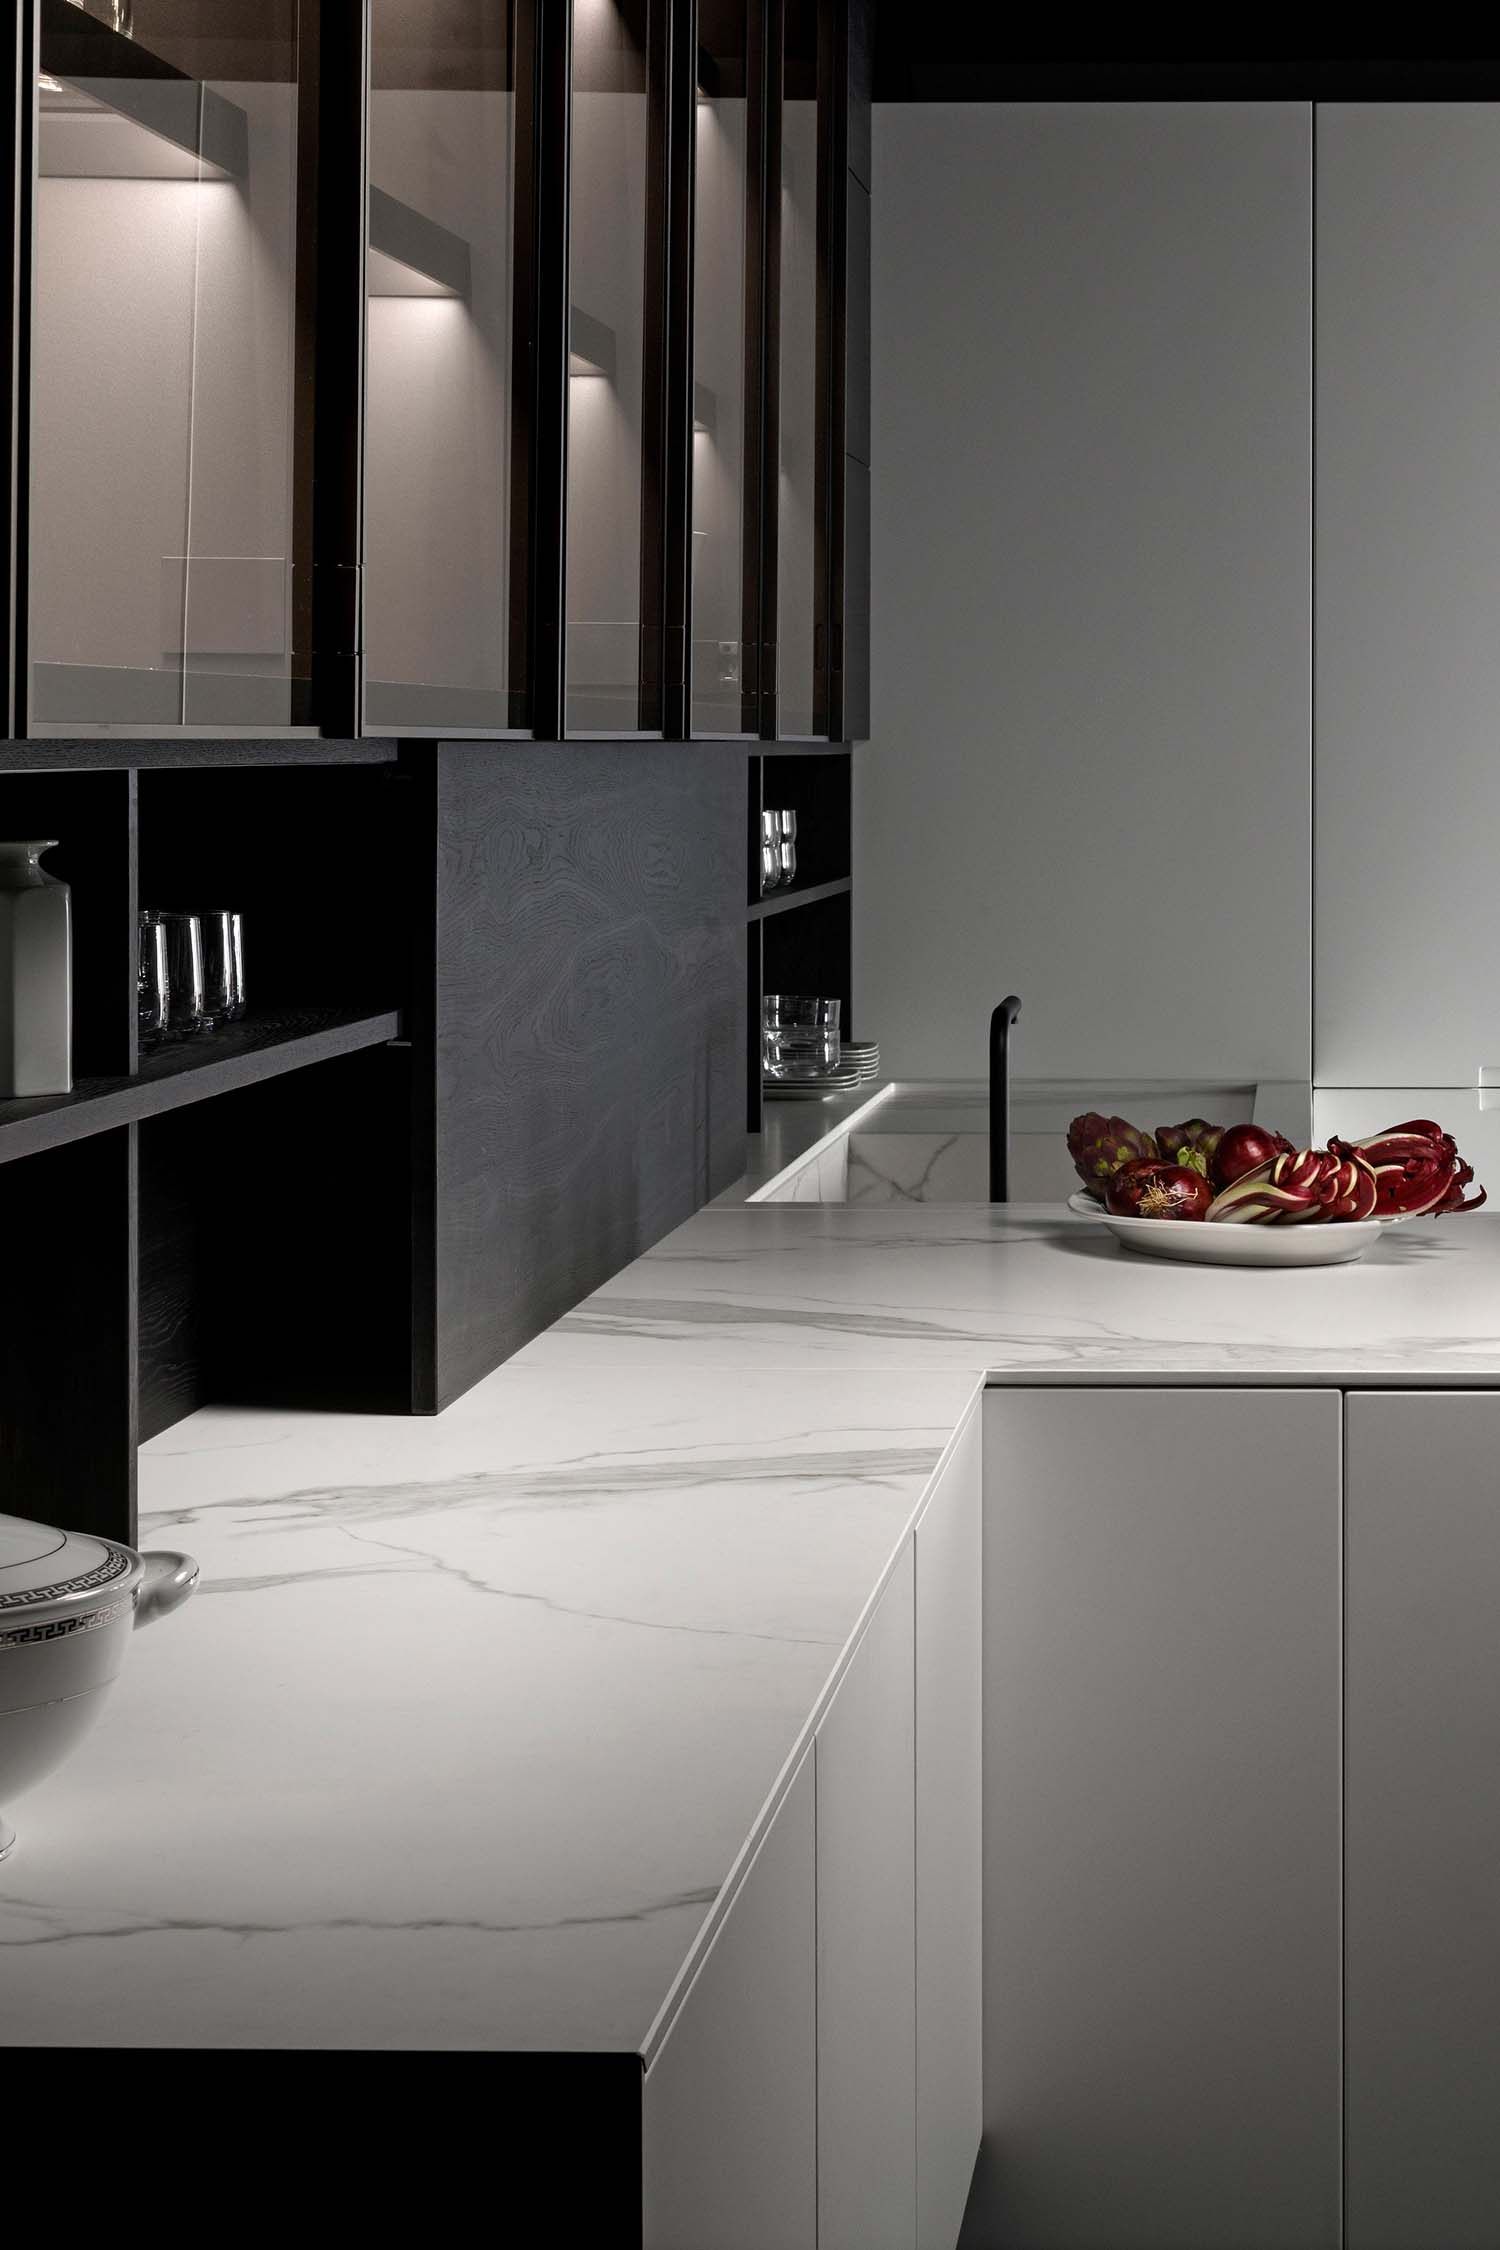 Luxury white Carrara Gres marble worktop in modern, handleless kitchen design.